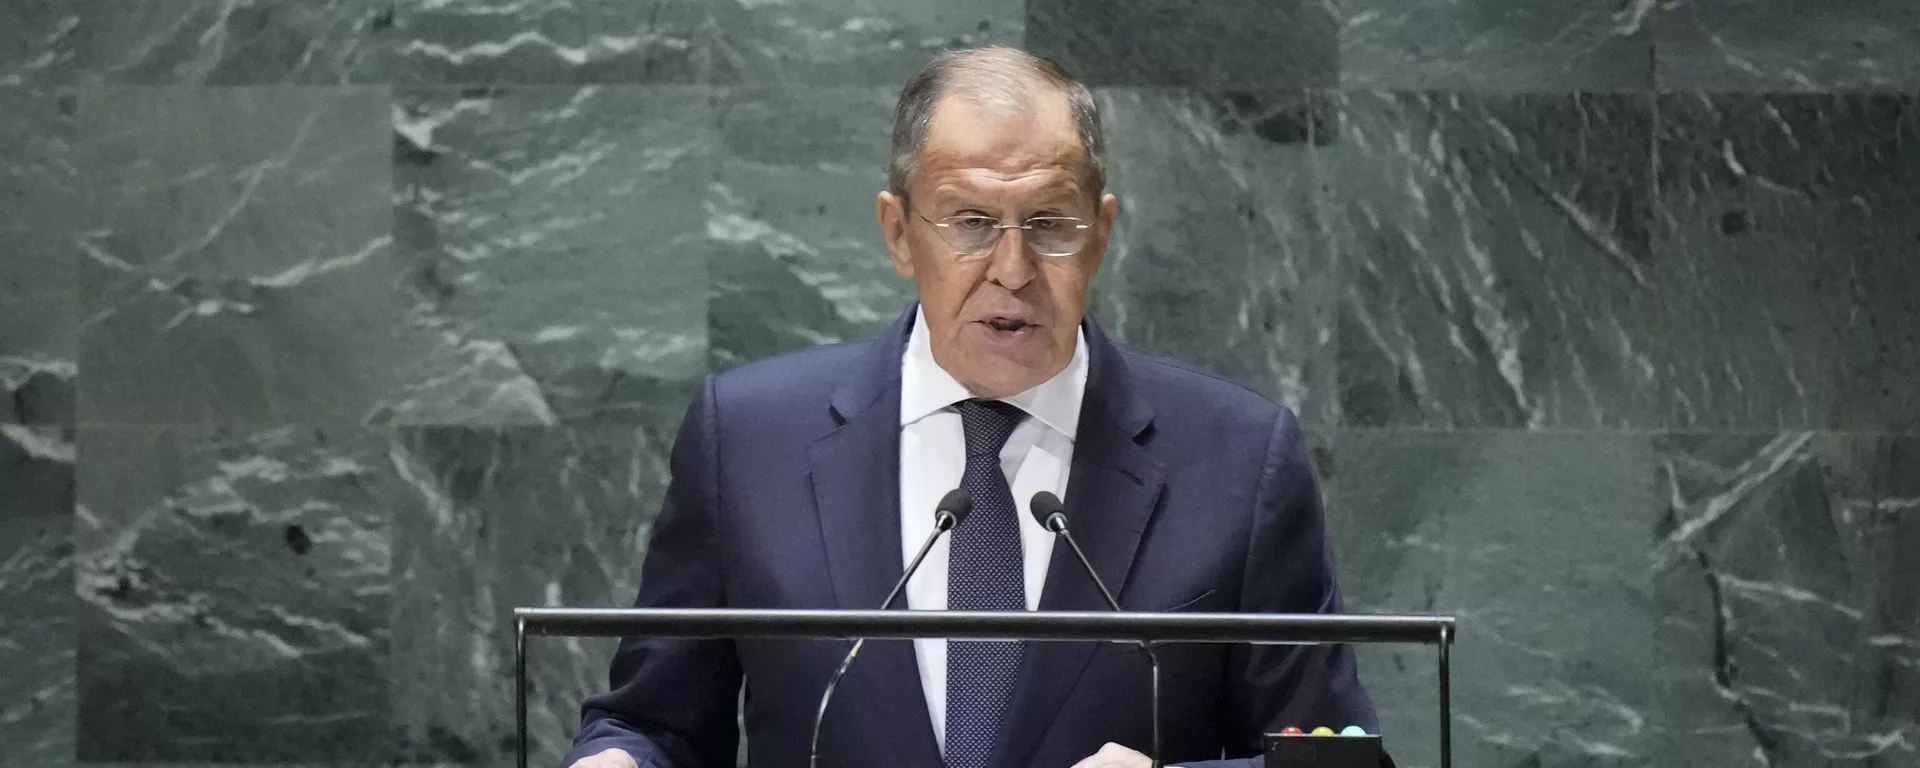 O ministro das Relações Exteriores da Rússia, Sergei Lavrov, em seu discurso na Assembleia Geral das Nações Unidas em Nova York neste sábado (23) - Sputnik Brasil, 1920, 23.09.2023